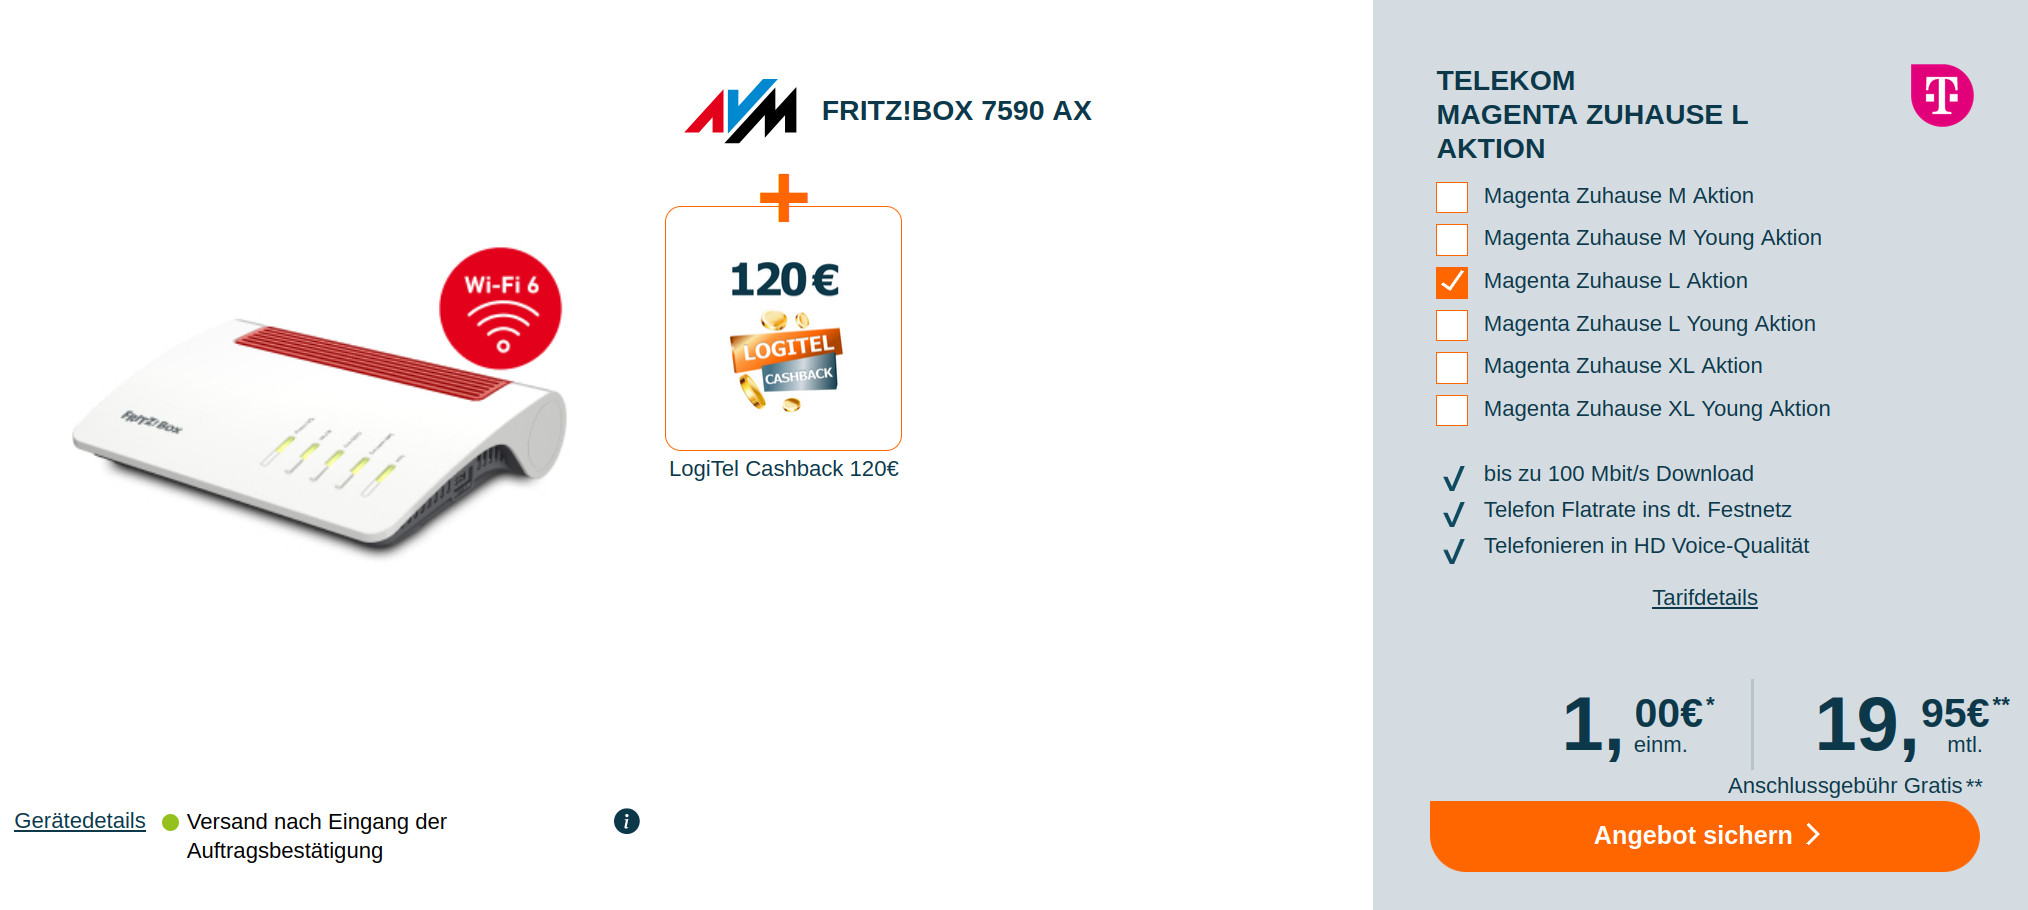 Telekom Magenta Zuhause: 120 Euro Cashback mit Fritzbox 7590 AX für mtl. 19,95 Euro